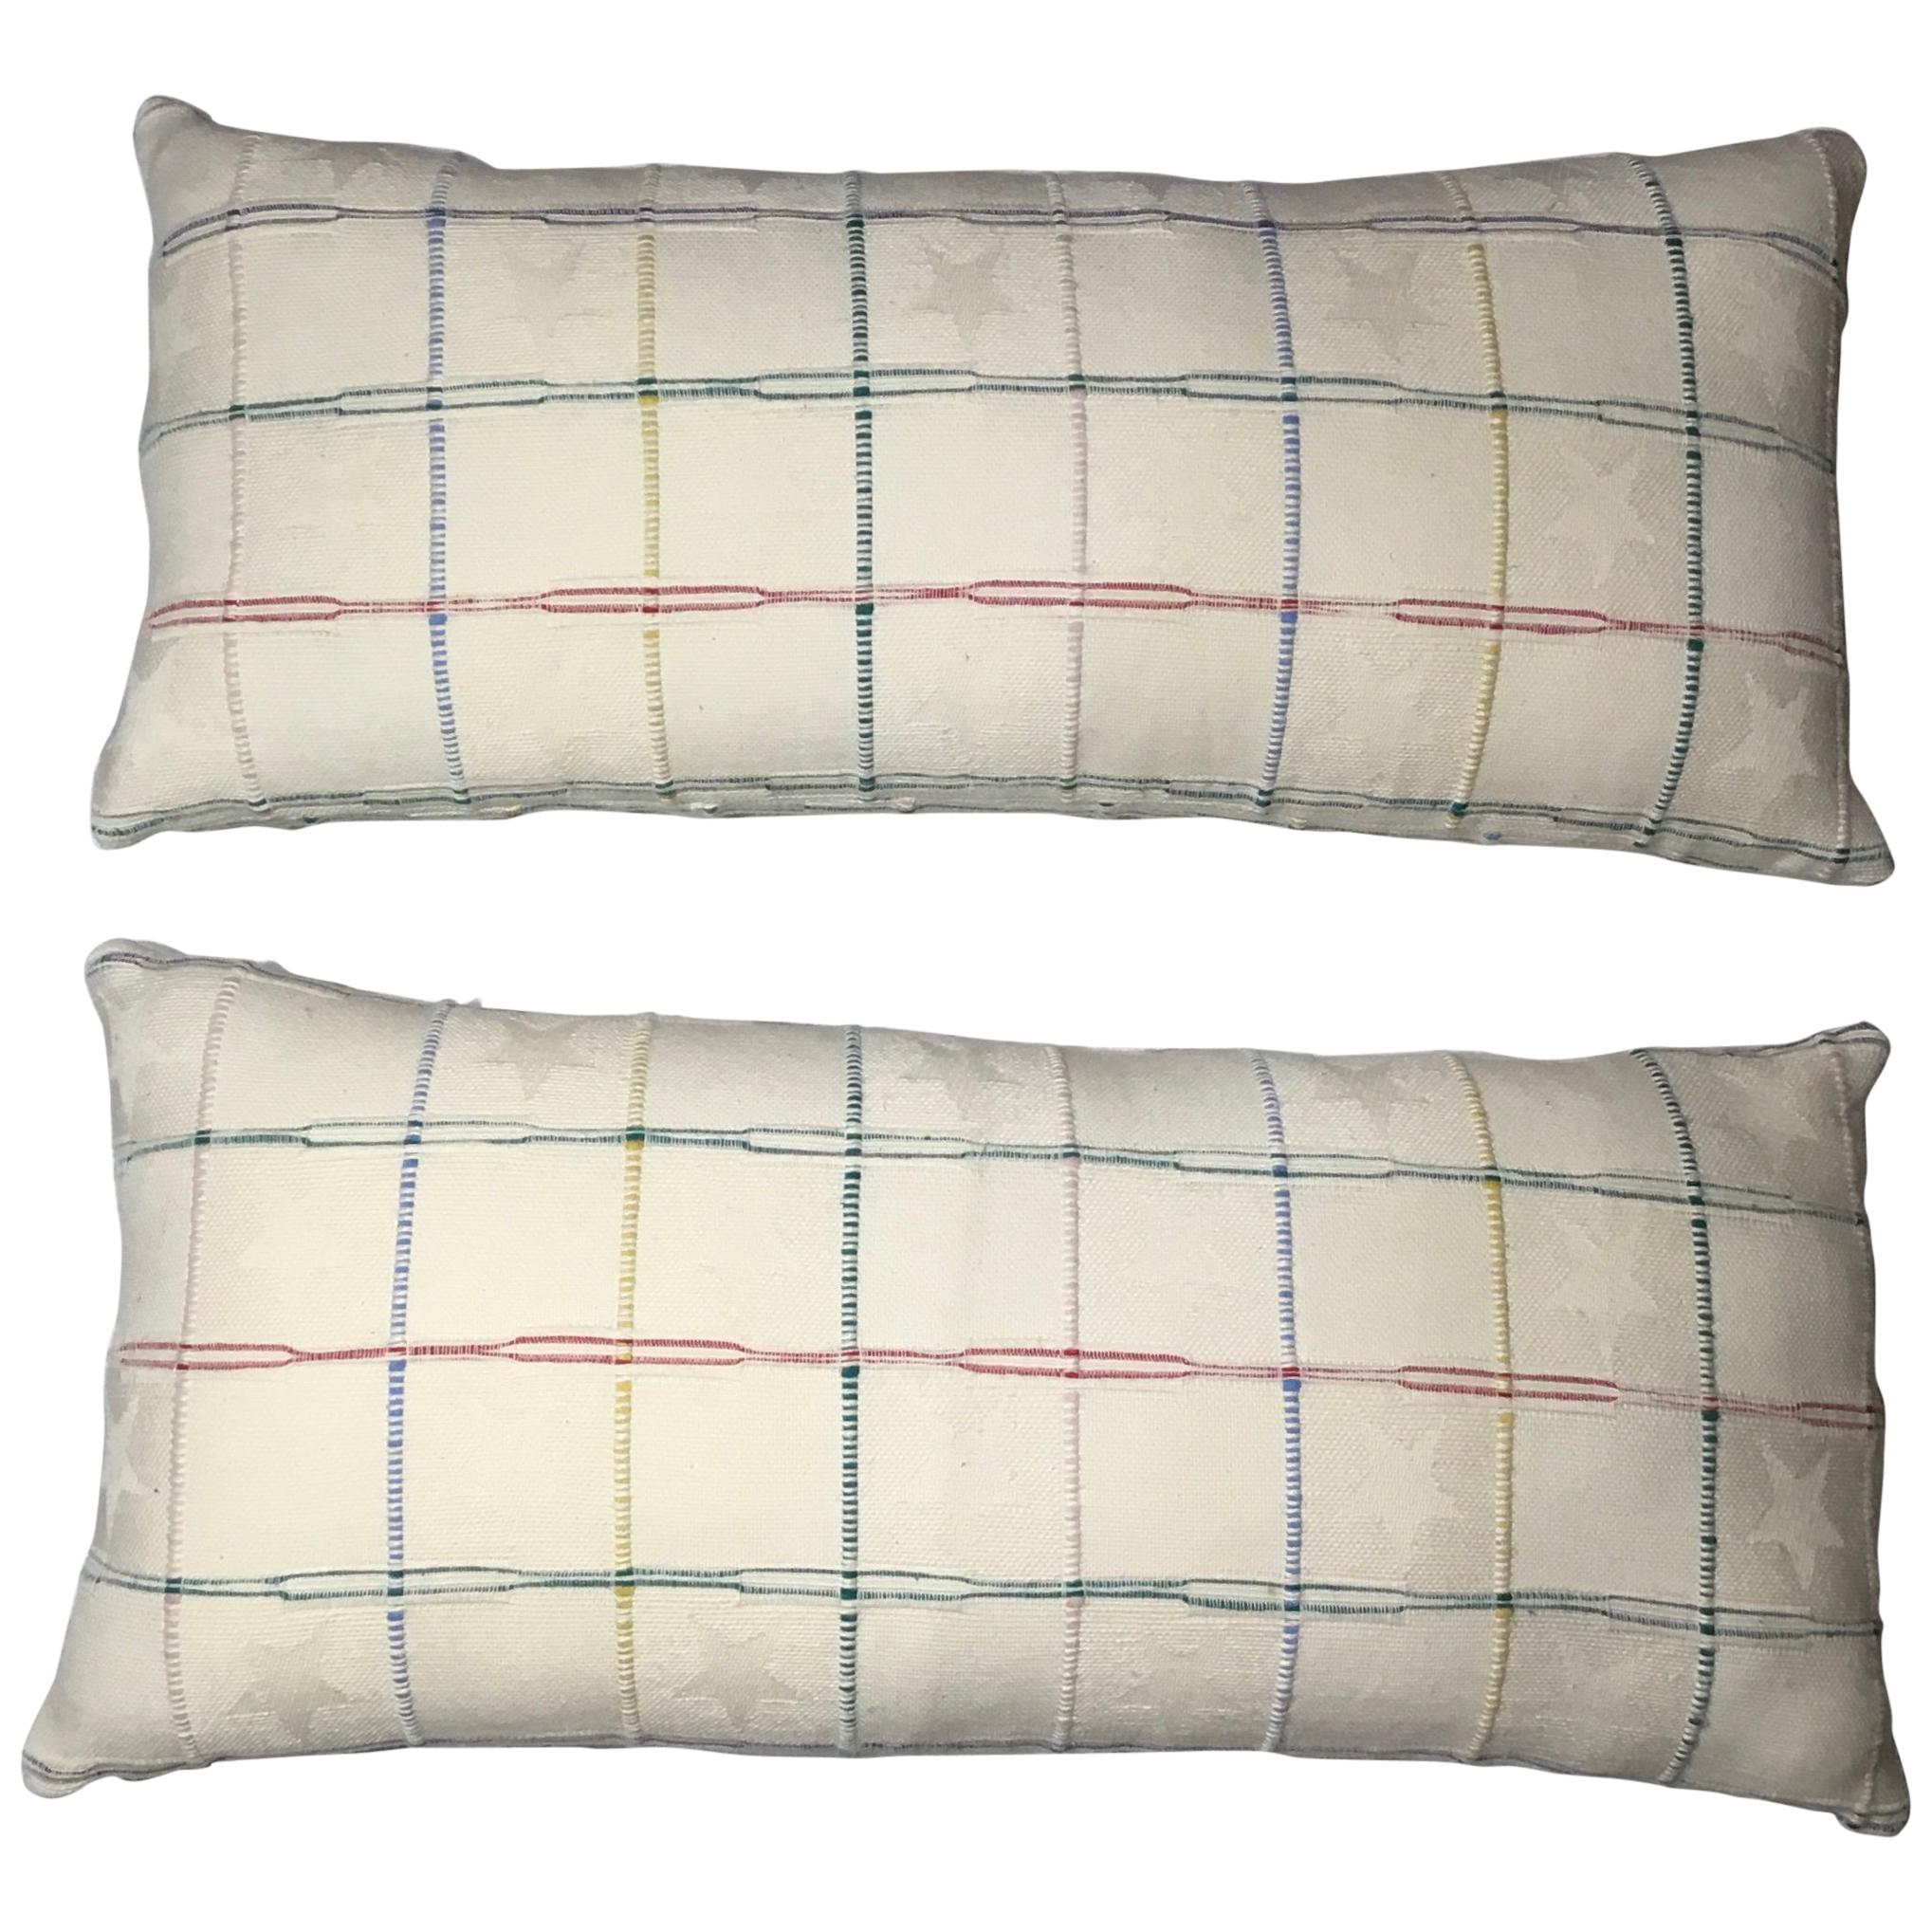 Elegant Pair of Decorative Pillows